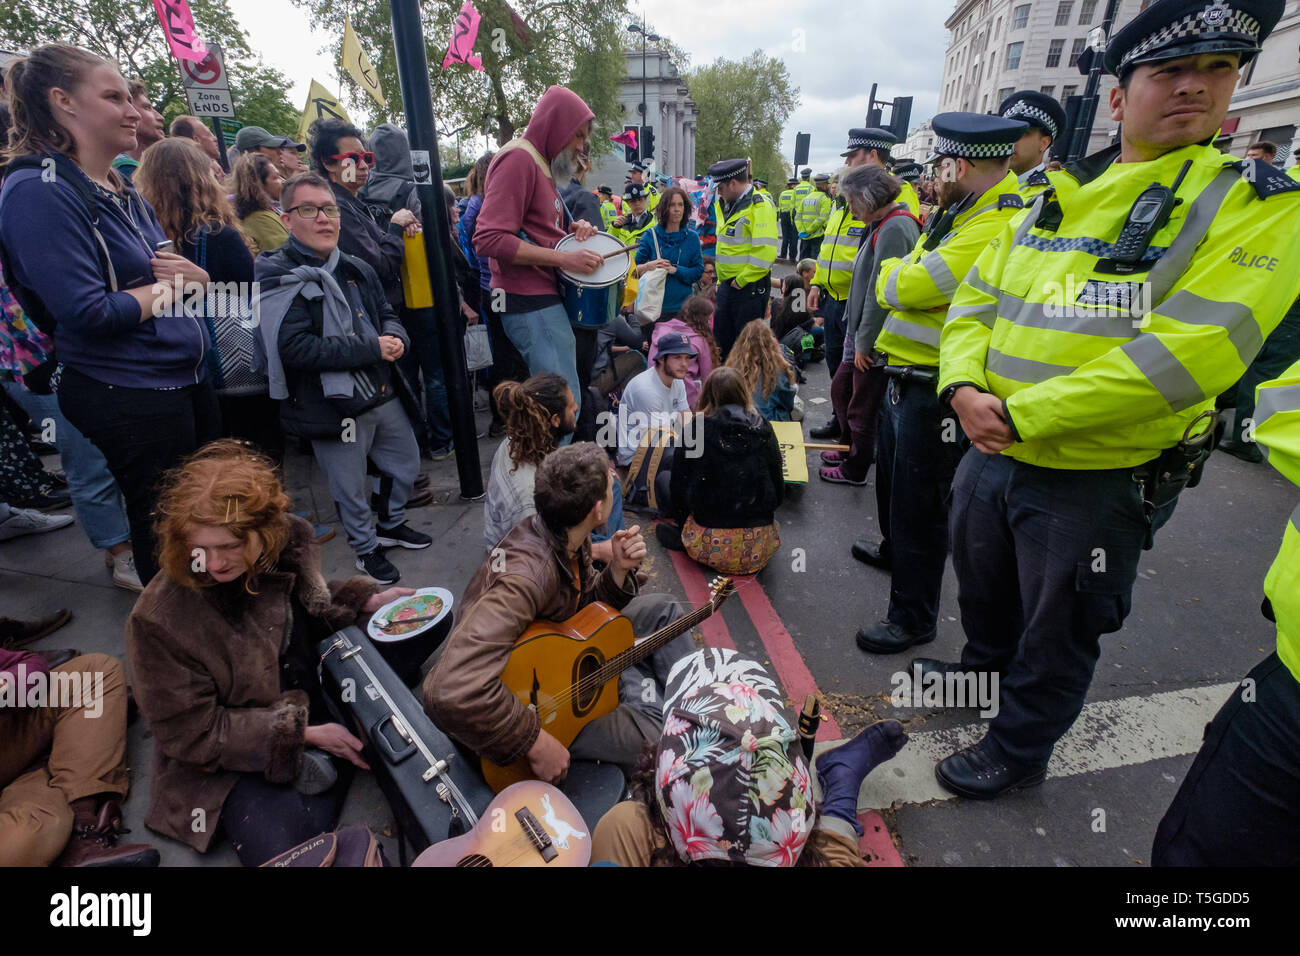 Londres, Royaume-Uni. 24 avril 2019. La police a été suppression de personnes bloquant la rue Oxford, le dernier bloc de la route autour de Marble Arch cet après-midi. Certaines personnes ont été verrouillé sur et être soigneusement découpée par des officiers, tandis que d'autres assis tranquillement entouré par la police et a attendu d'être arrêté alors qu'une petite foule vu par plusieurs lignes d'agents de police a tenté de les amener à s'éloigner. Du Marble Arch la protestation a continué avec des tambours et de la danse, de la nourriture et des centaines de tentes. Peter Marshall/Alamy Live News Banque D'Images